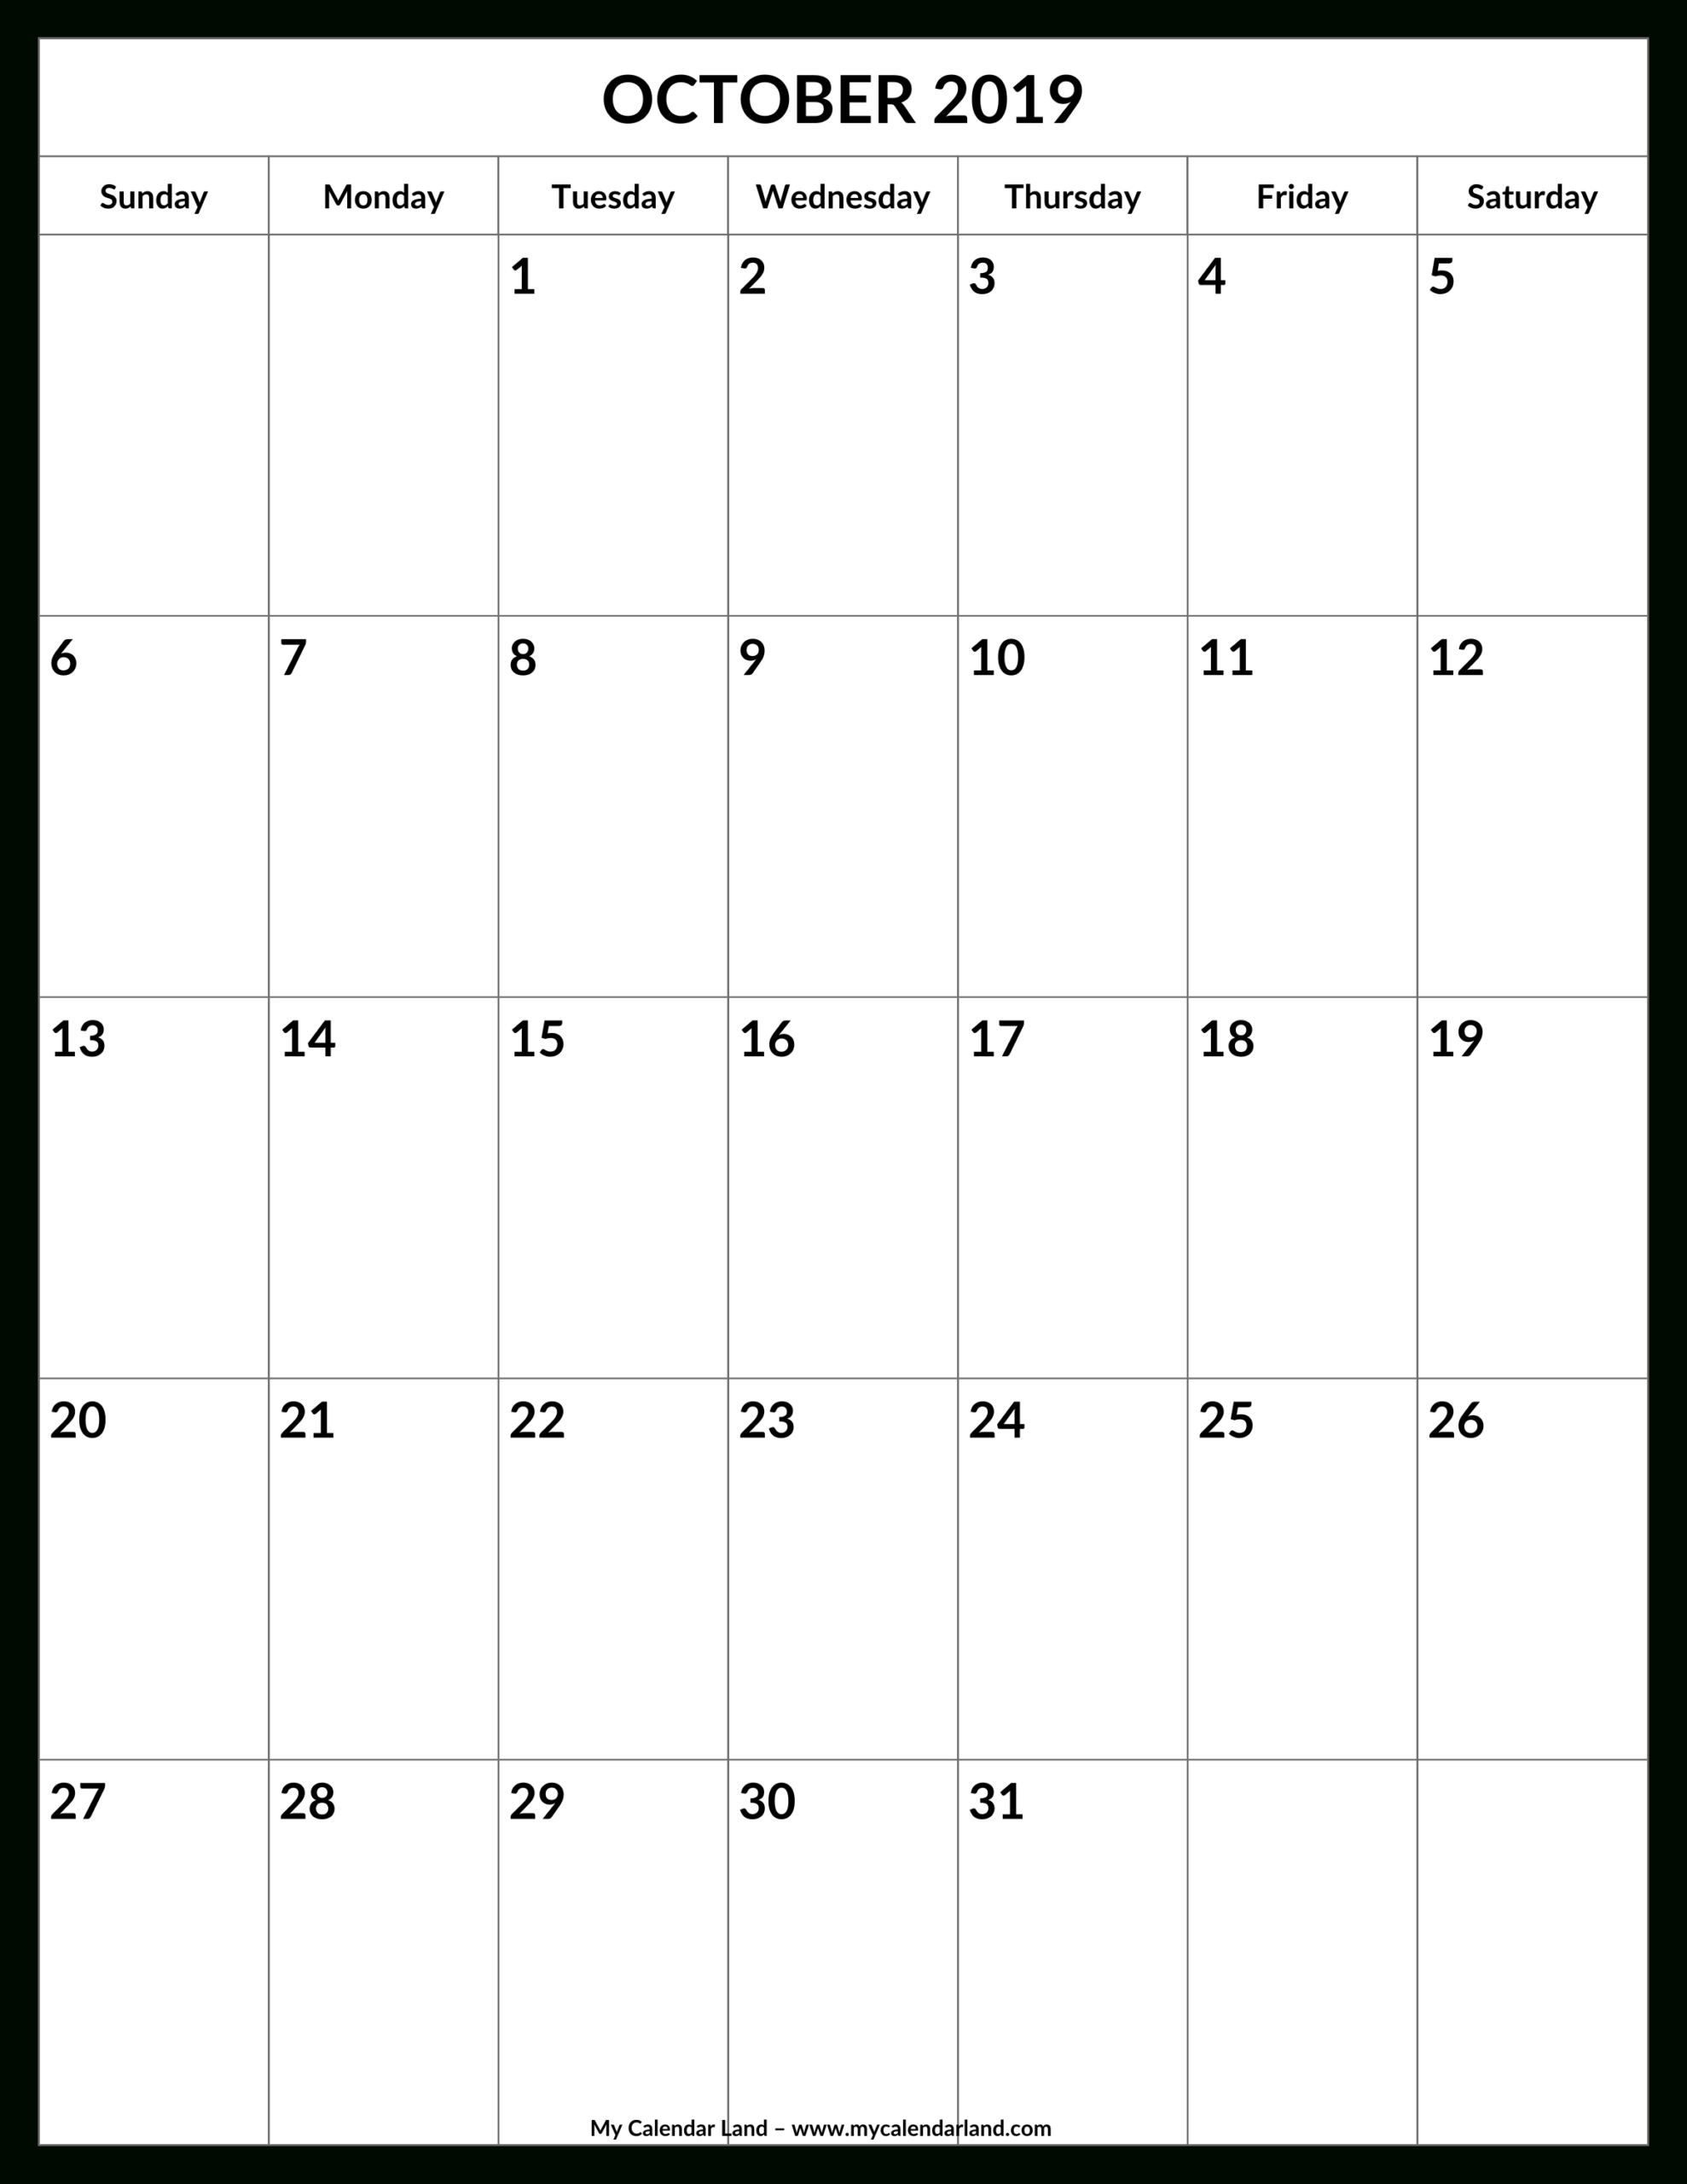 October 2020 Calendar  My Calendar Land in Blank Monthly Calendar Portrait